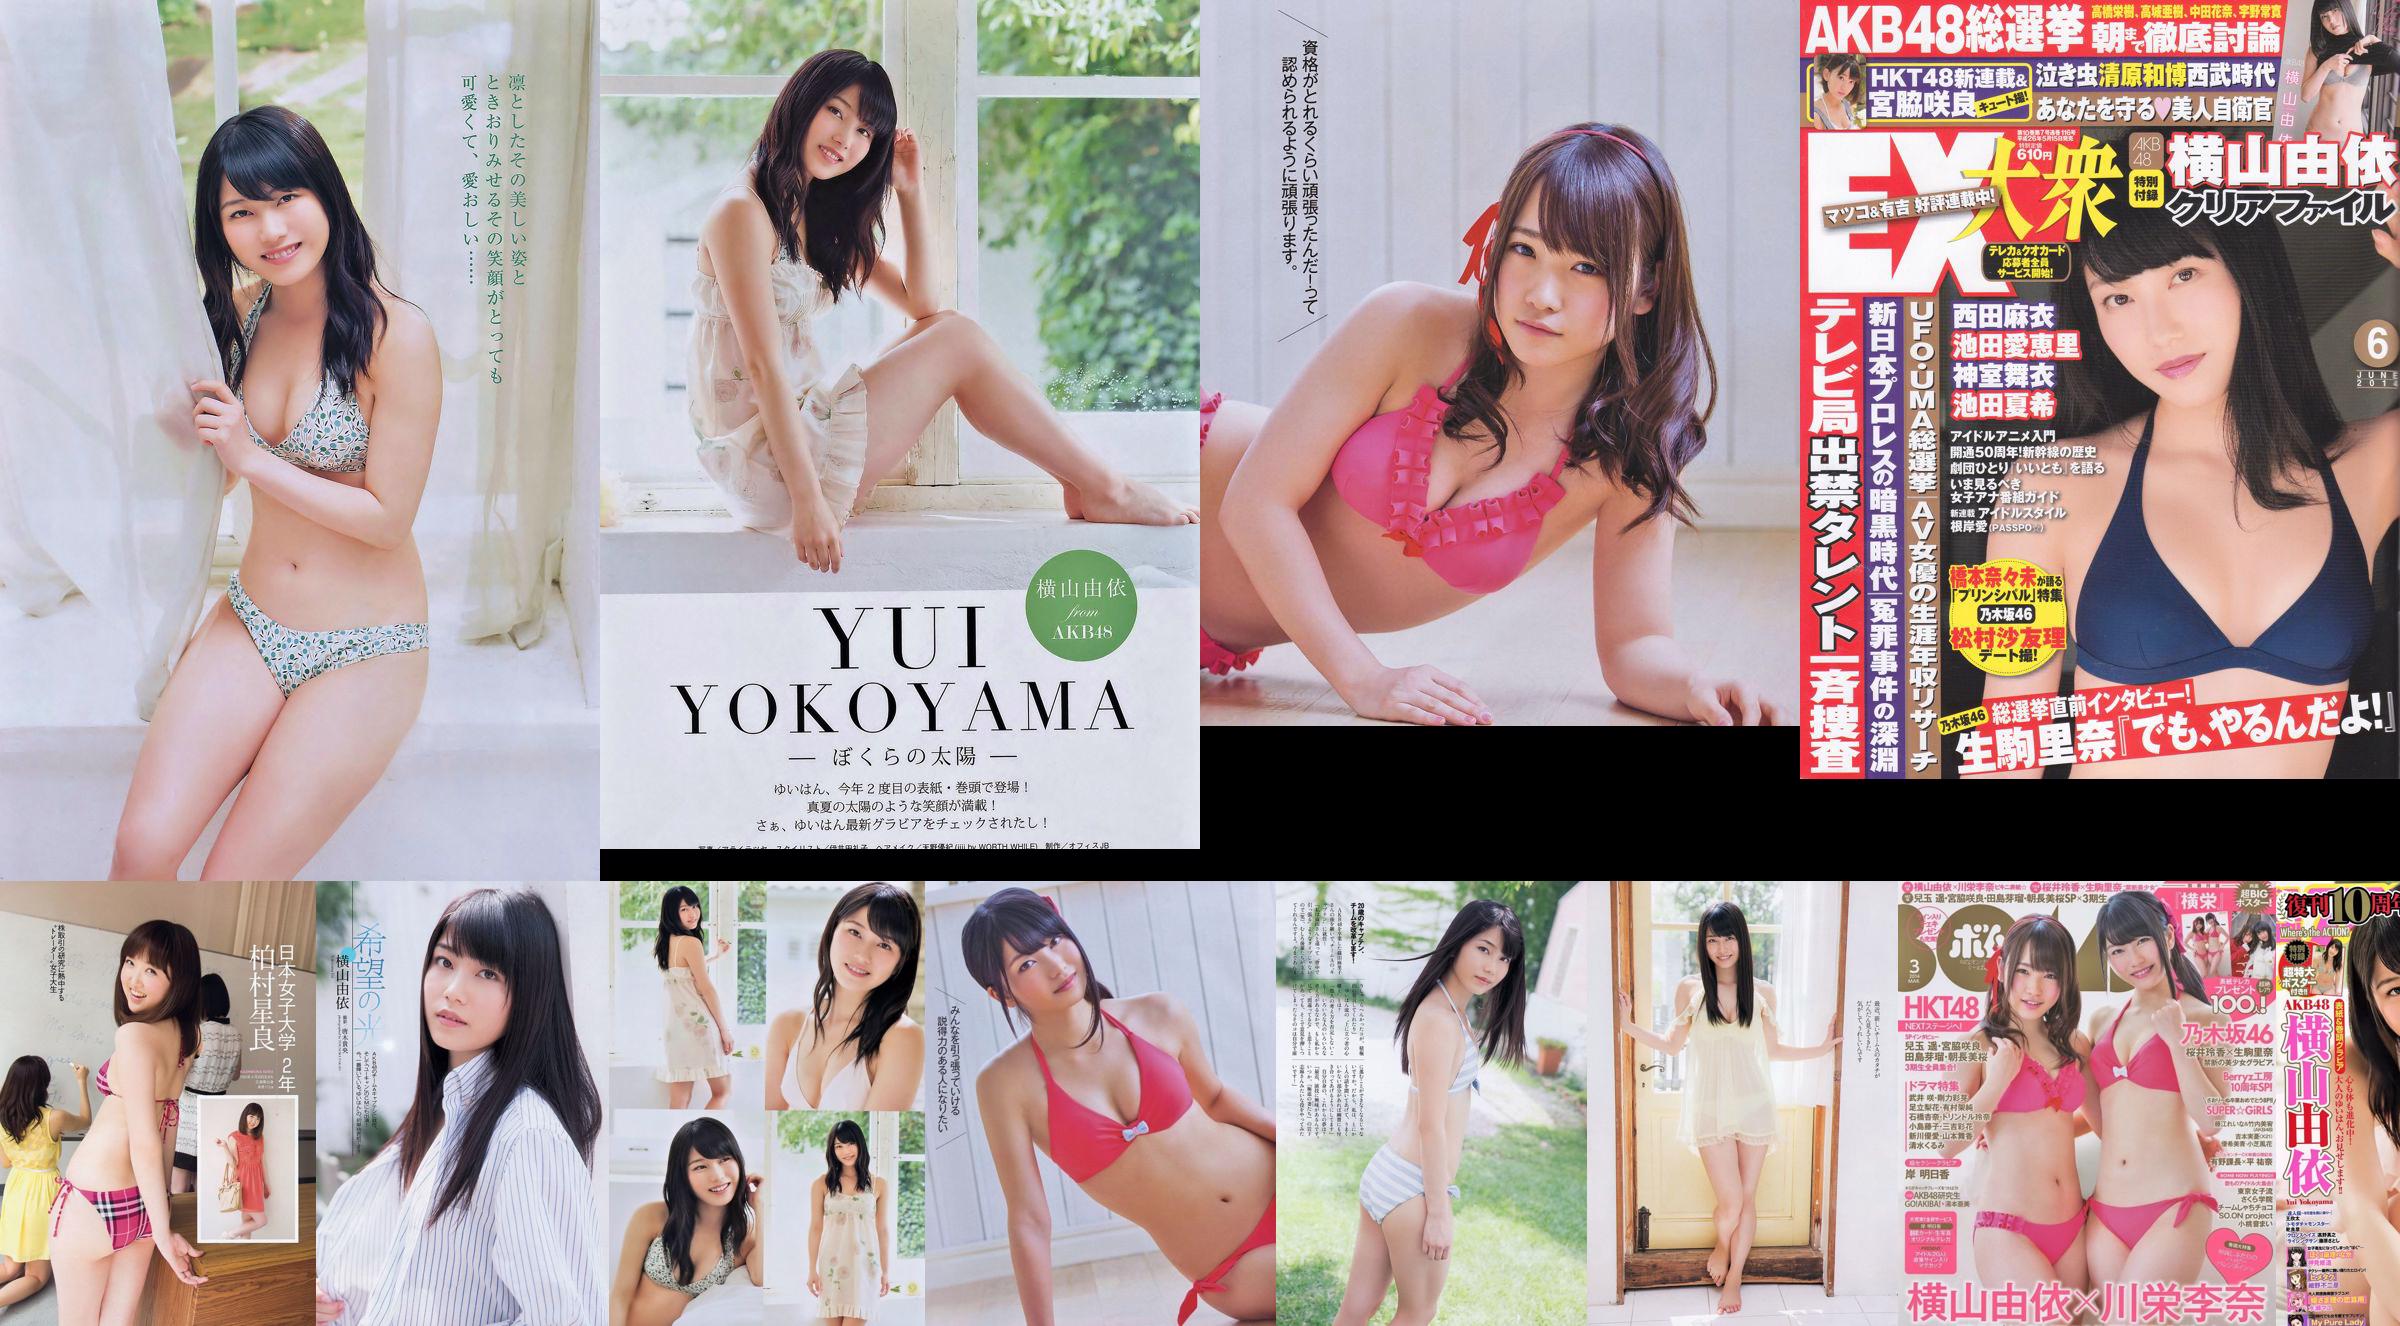 [EX Taishu] Yokoyama Yui, Miyawaki Sakura, Matsumura Sa Yuri 2014 Tạp chí ảnh số 06 No.19df9f Trang 1